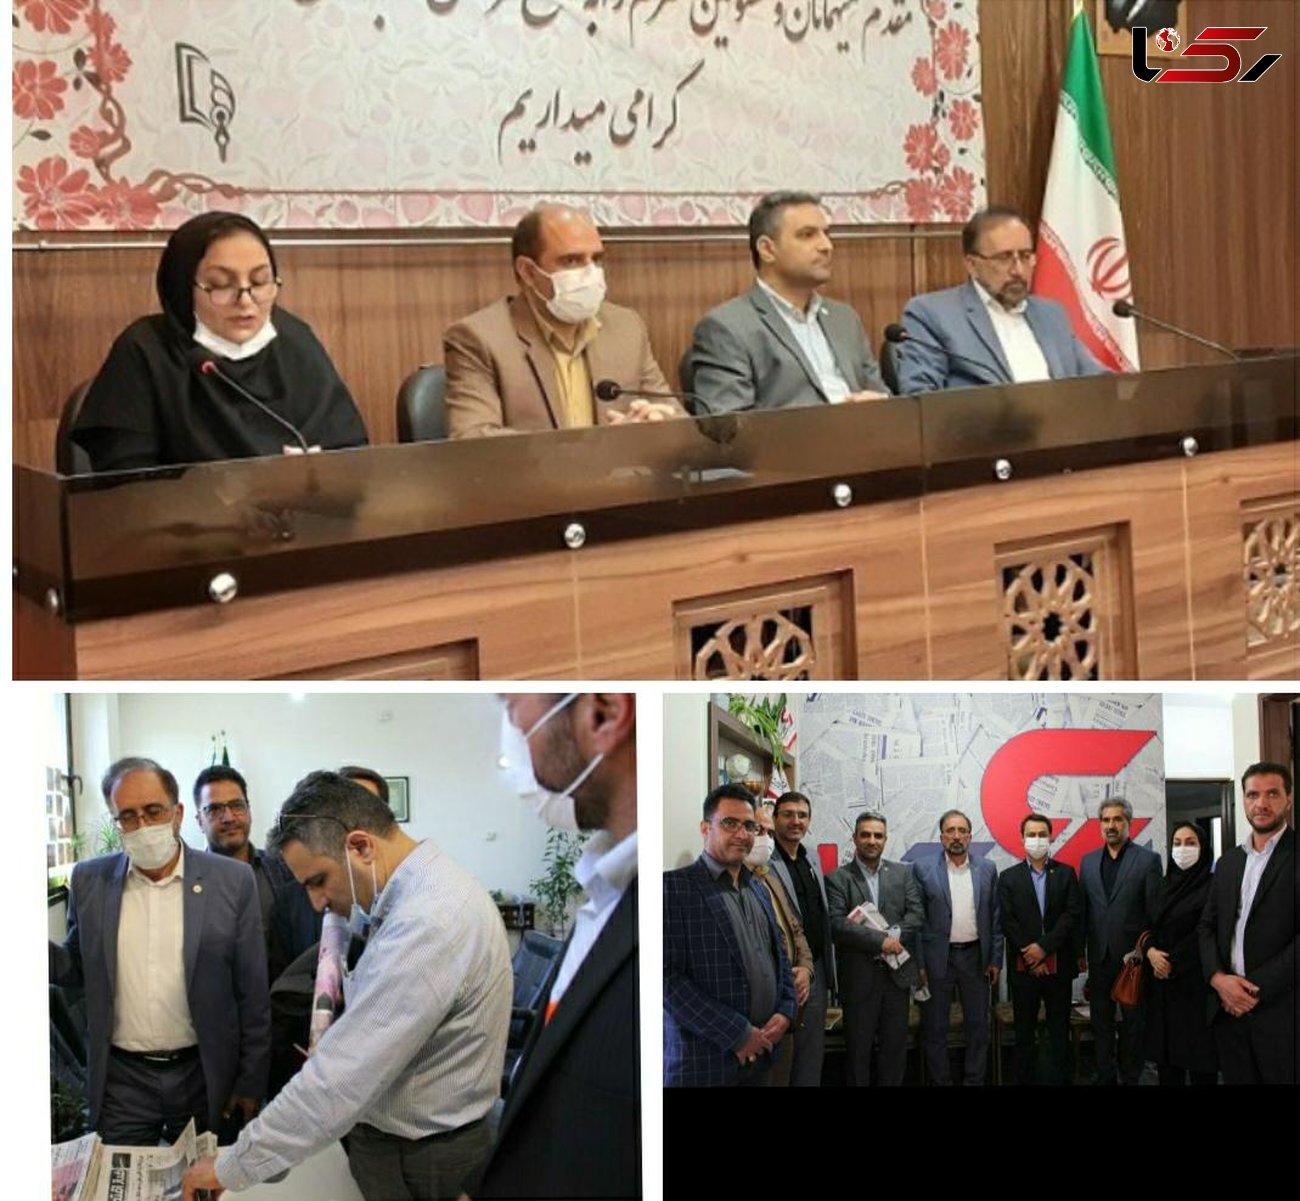 بازدید مدیران تأمین اجتماعی از دفتر رکنا و مطبوعات اصفهان 